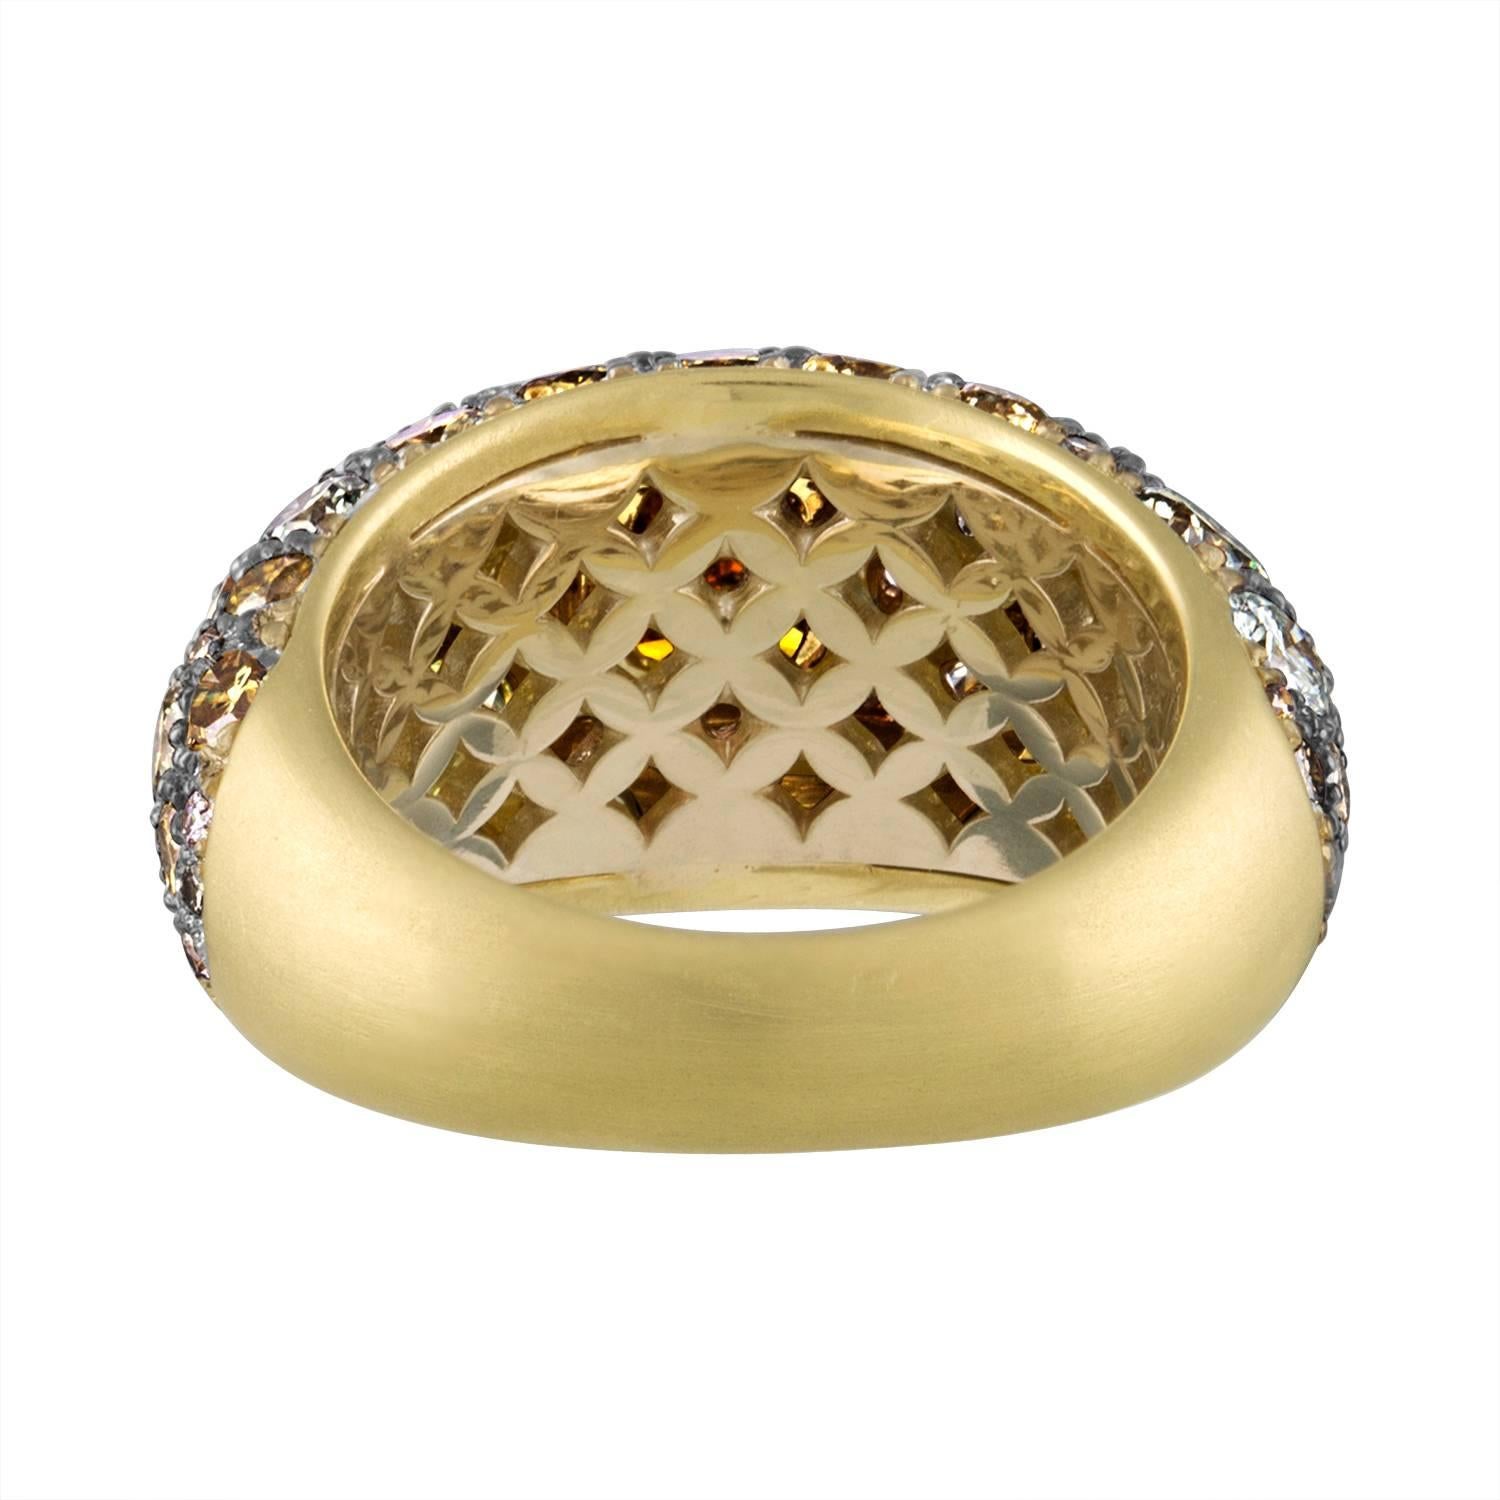 Women's 2.02 GIA Certified Cushion Cut Diamond Ring in 18 Karat Yellow Gold